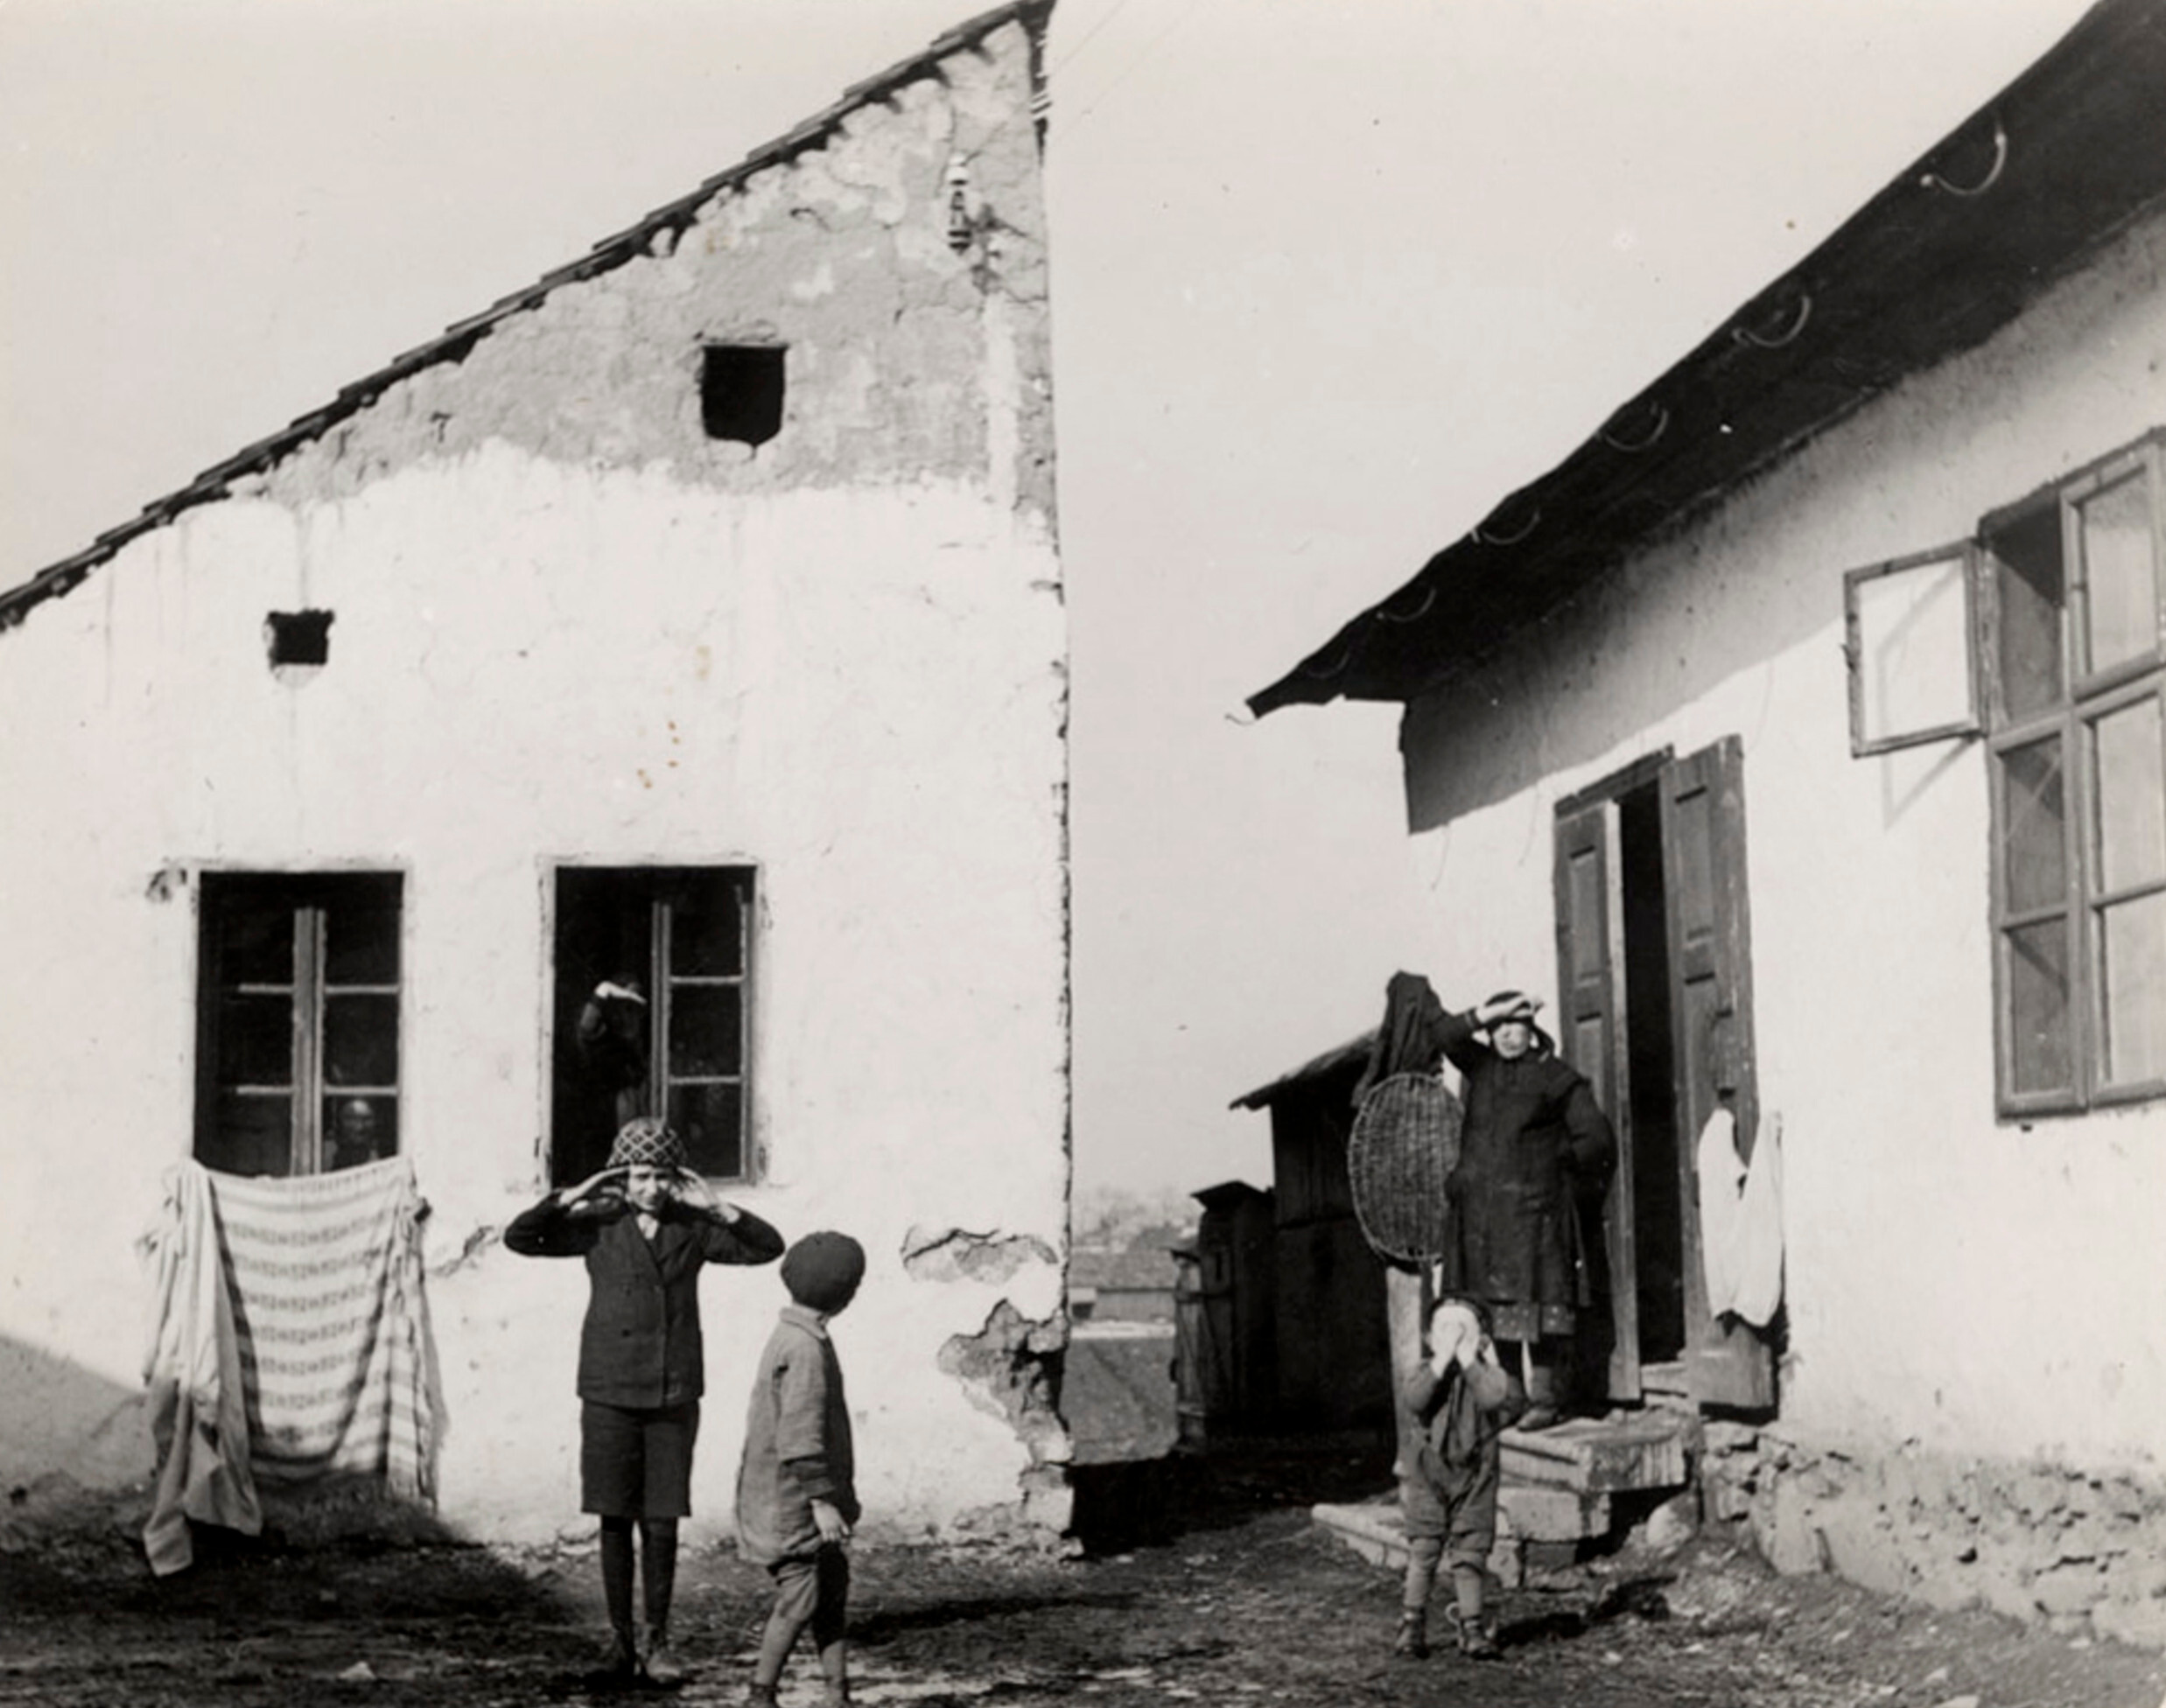 Сельские жители в Карпатах, ок. 1935-38 гг. Фотограф Роман Вишняк